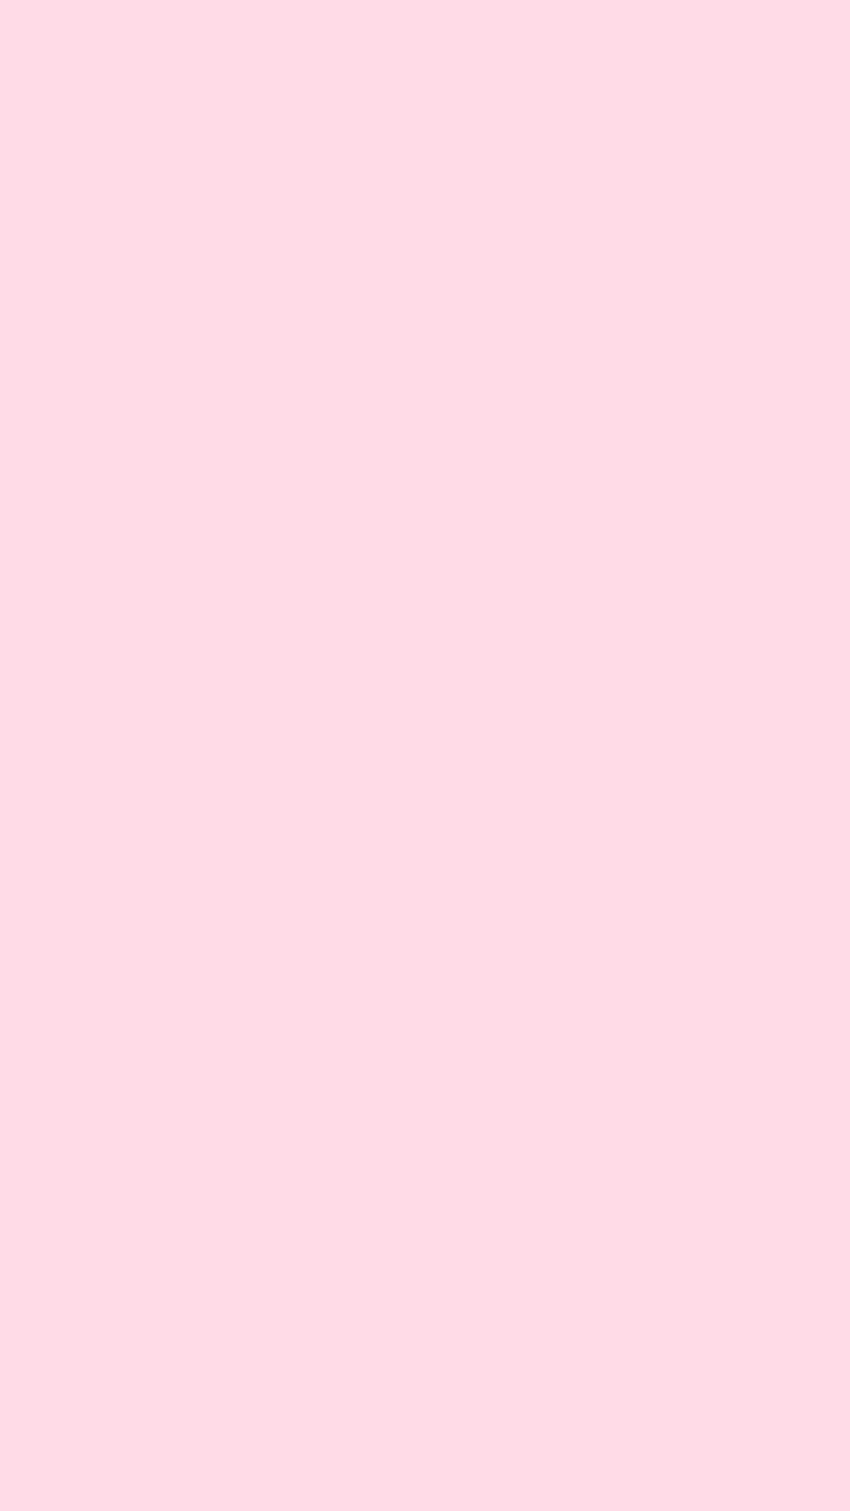 Light pink solid color backgrounds HD wallpapers | Pxfuel - hình nền HD màu hồng nhạt đơn sắc: Với hình ảnh thành phố mờ sáng trong tông màu hồng nhạt tuyệt đẹp, bộ sưu tập hình nền HD màu hồng - đỏ đơn sắc trên Pxfuel sẽ khiến bạn say mê. Hãy đến và khám phá những hình ảnh này để trang trí máy tính và điện thoại của bạn ngay hôm nay.